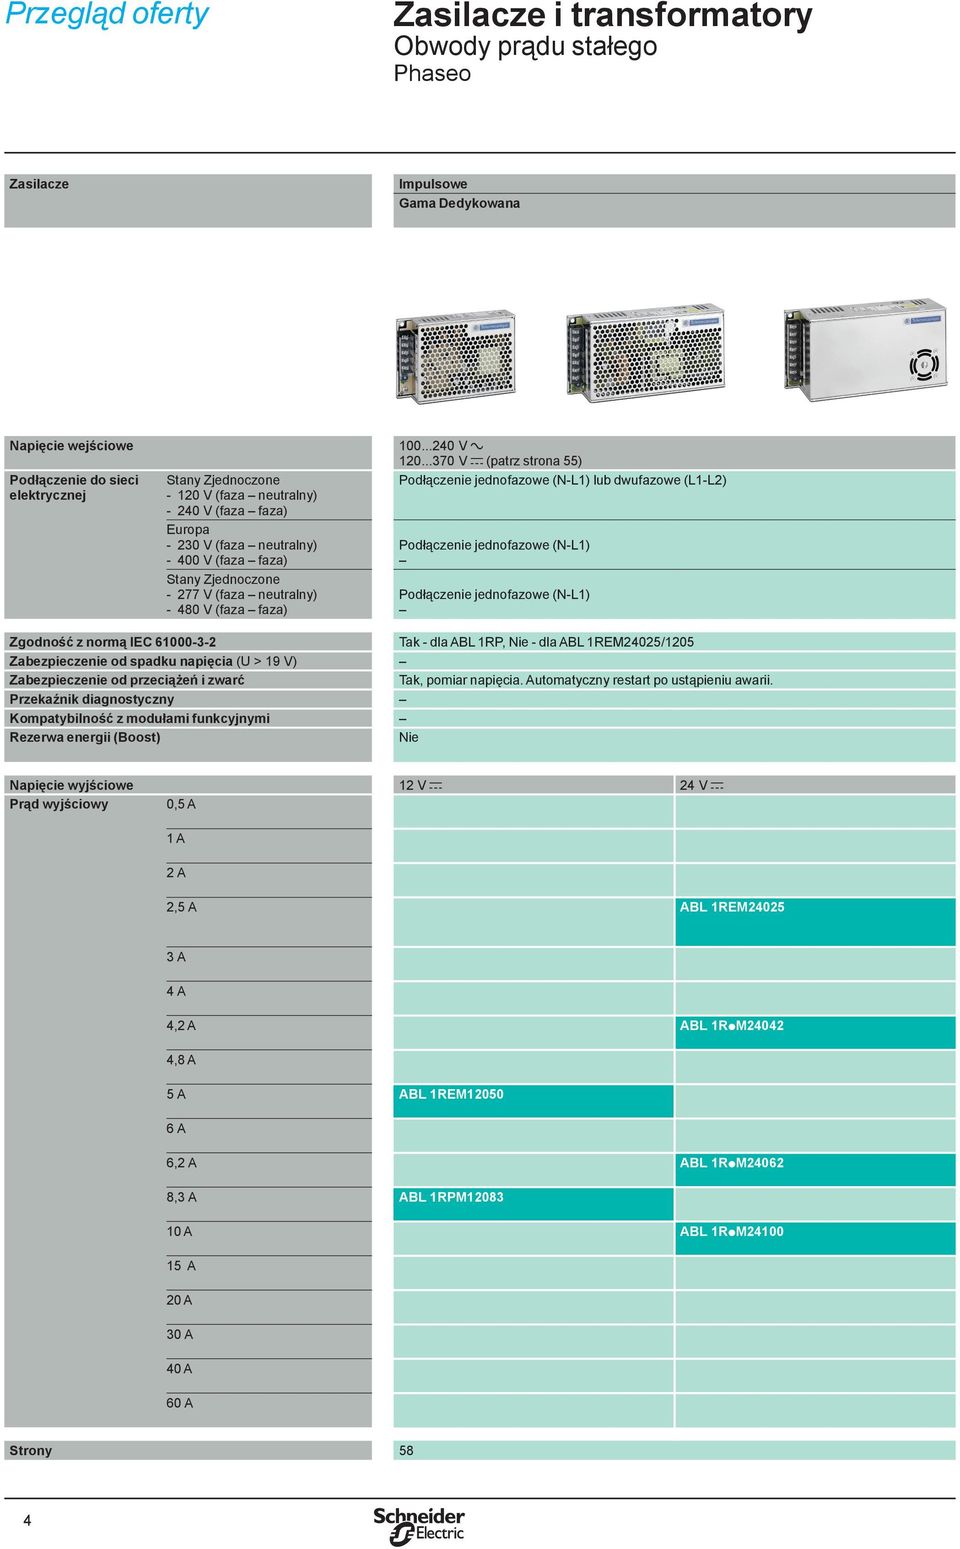 ..370 V c (patrz strona 55) Podłączenie jednofazowe (N-L1) lub dwufazowe (L1-L2) Podłączenie jednofazowe (N-L1) Podłączenie jednofazowe (N-L1) Zgodność z normą IEC 61000-3-2 Tak - dla ABL 1RP, Nie -